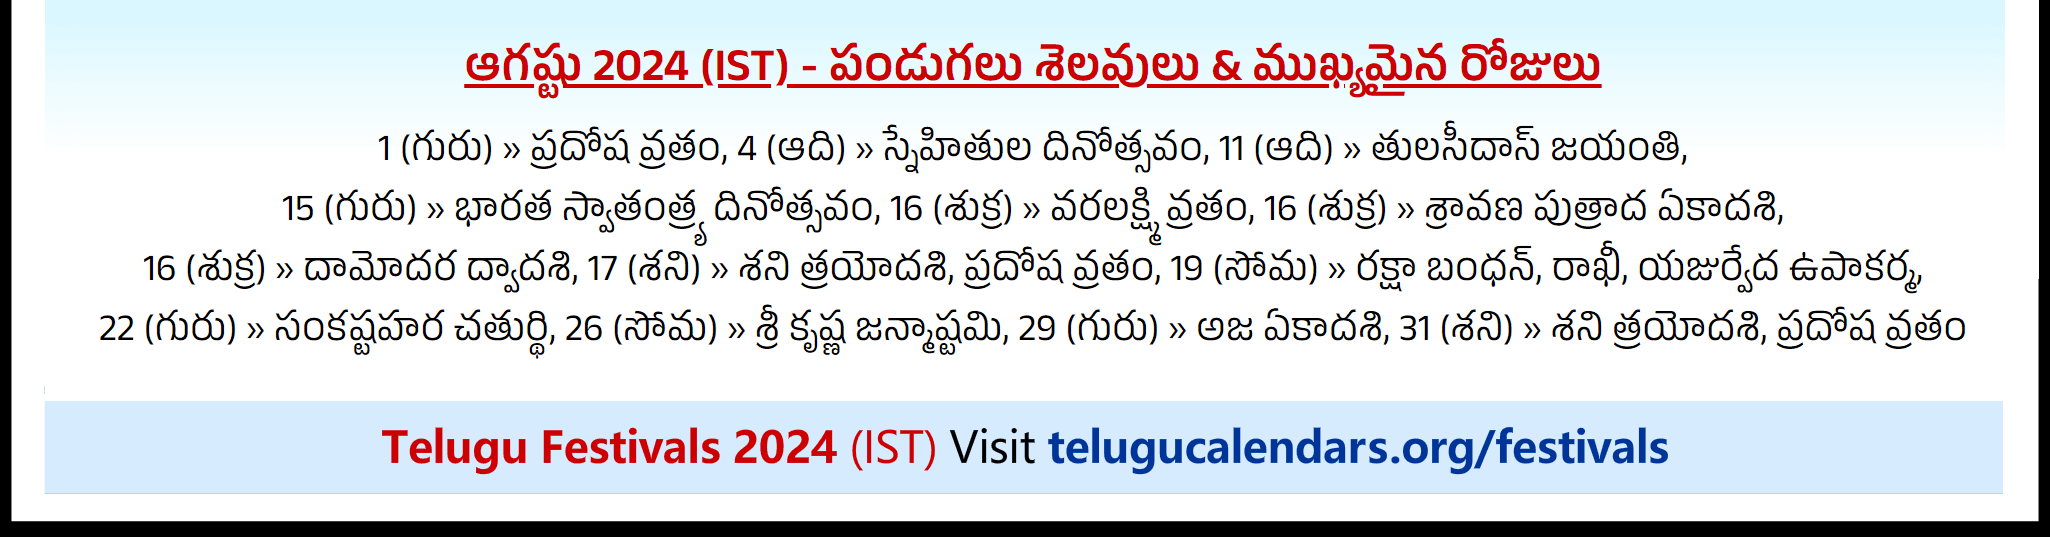 Telugu Festivals 2024 August Chicago